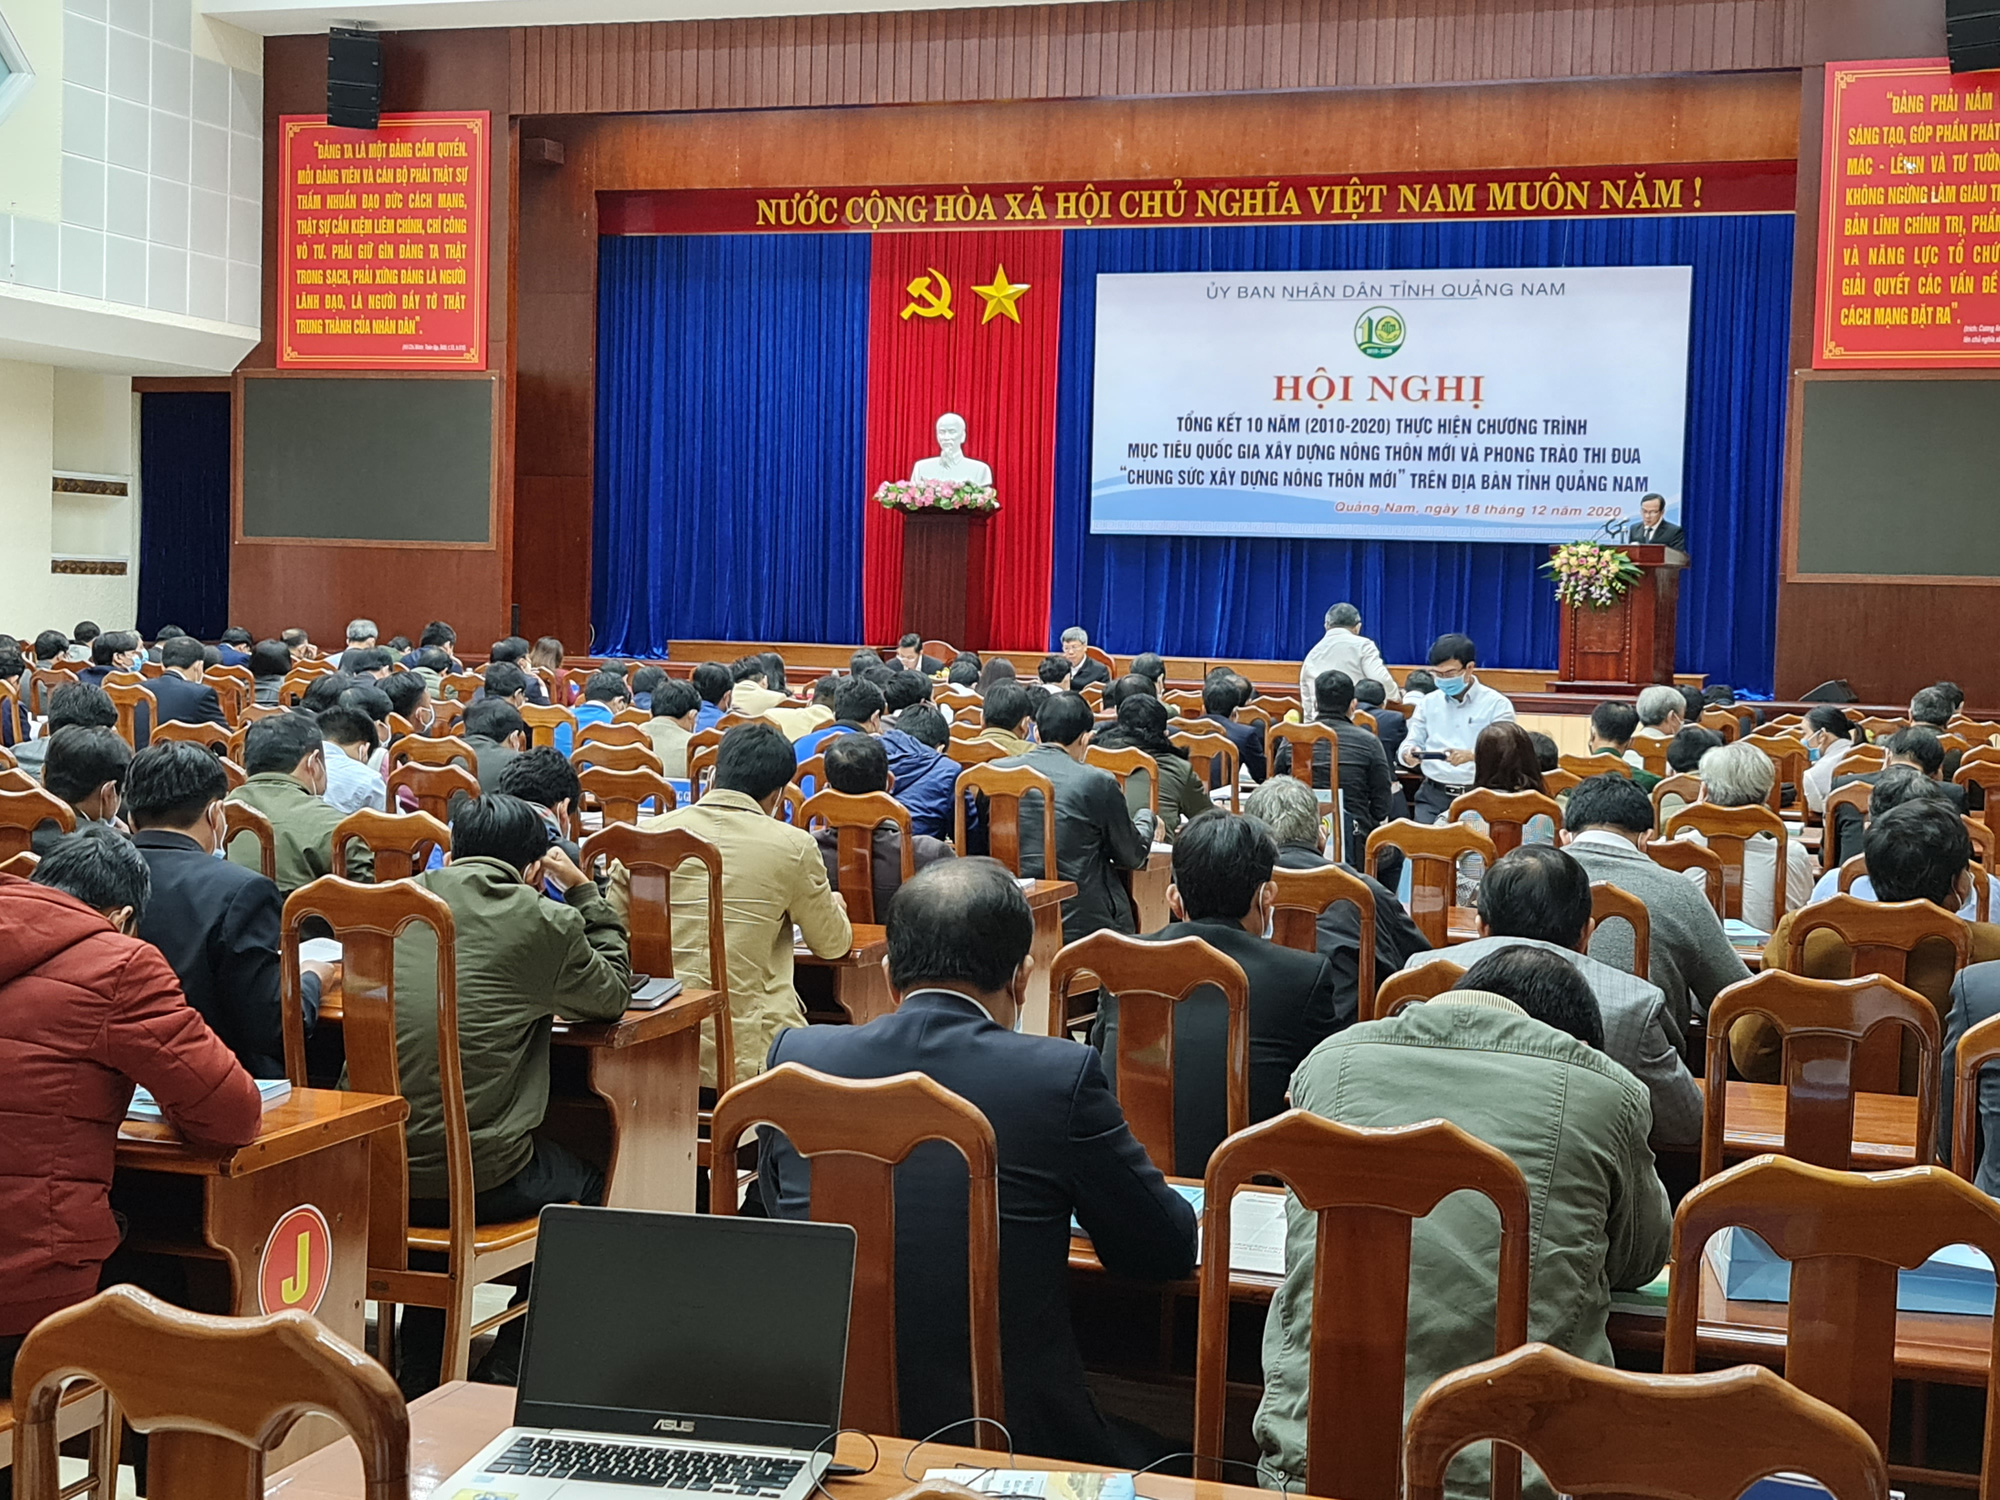 10 năm xây dựng NTM, Quảng Nam có 116 xã đạt chuẩn - Ảnh 1.